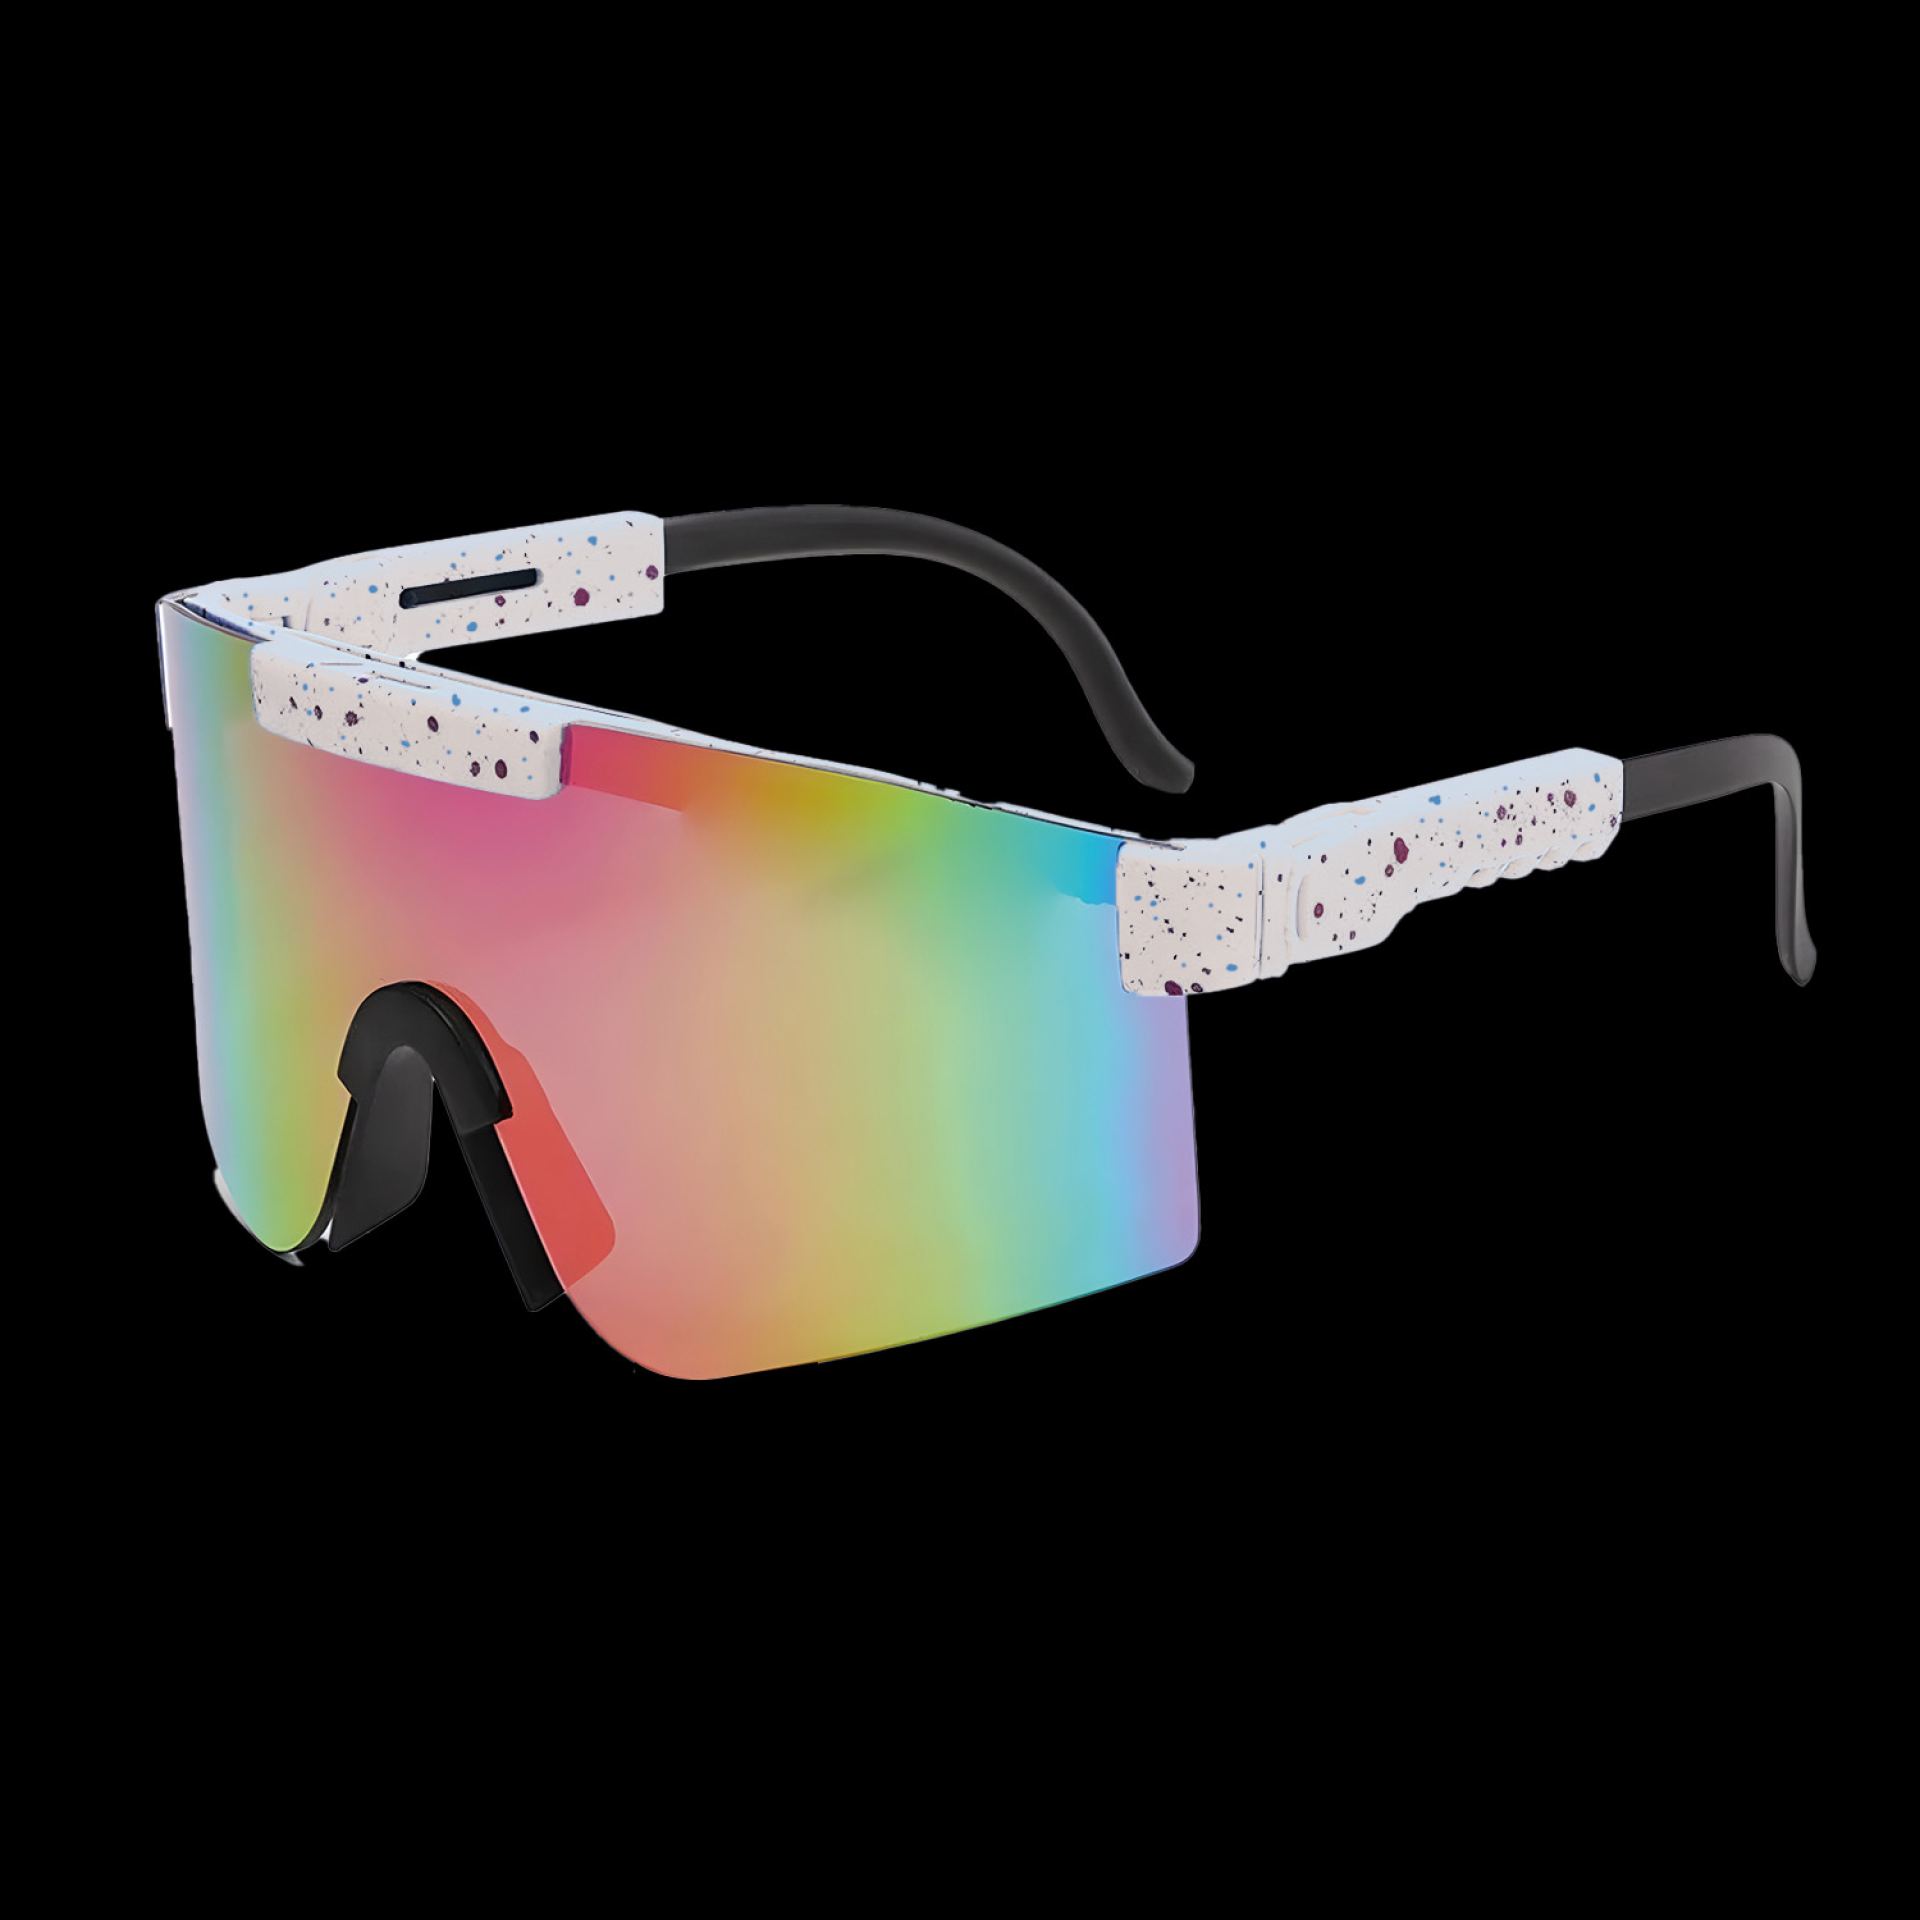 Rave bril sport zonnebril wit/rood kopen